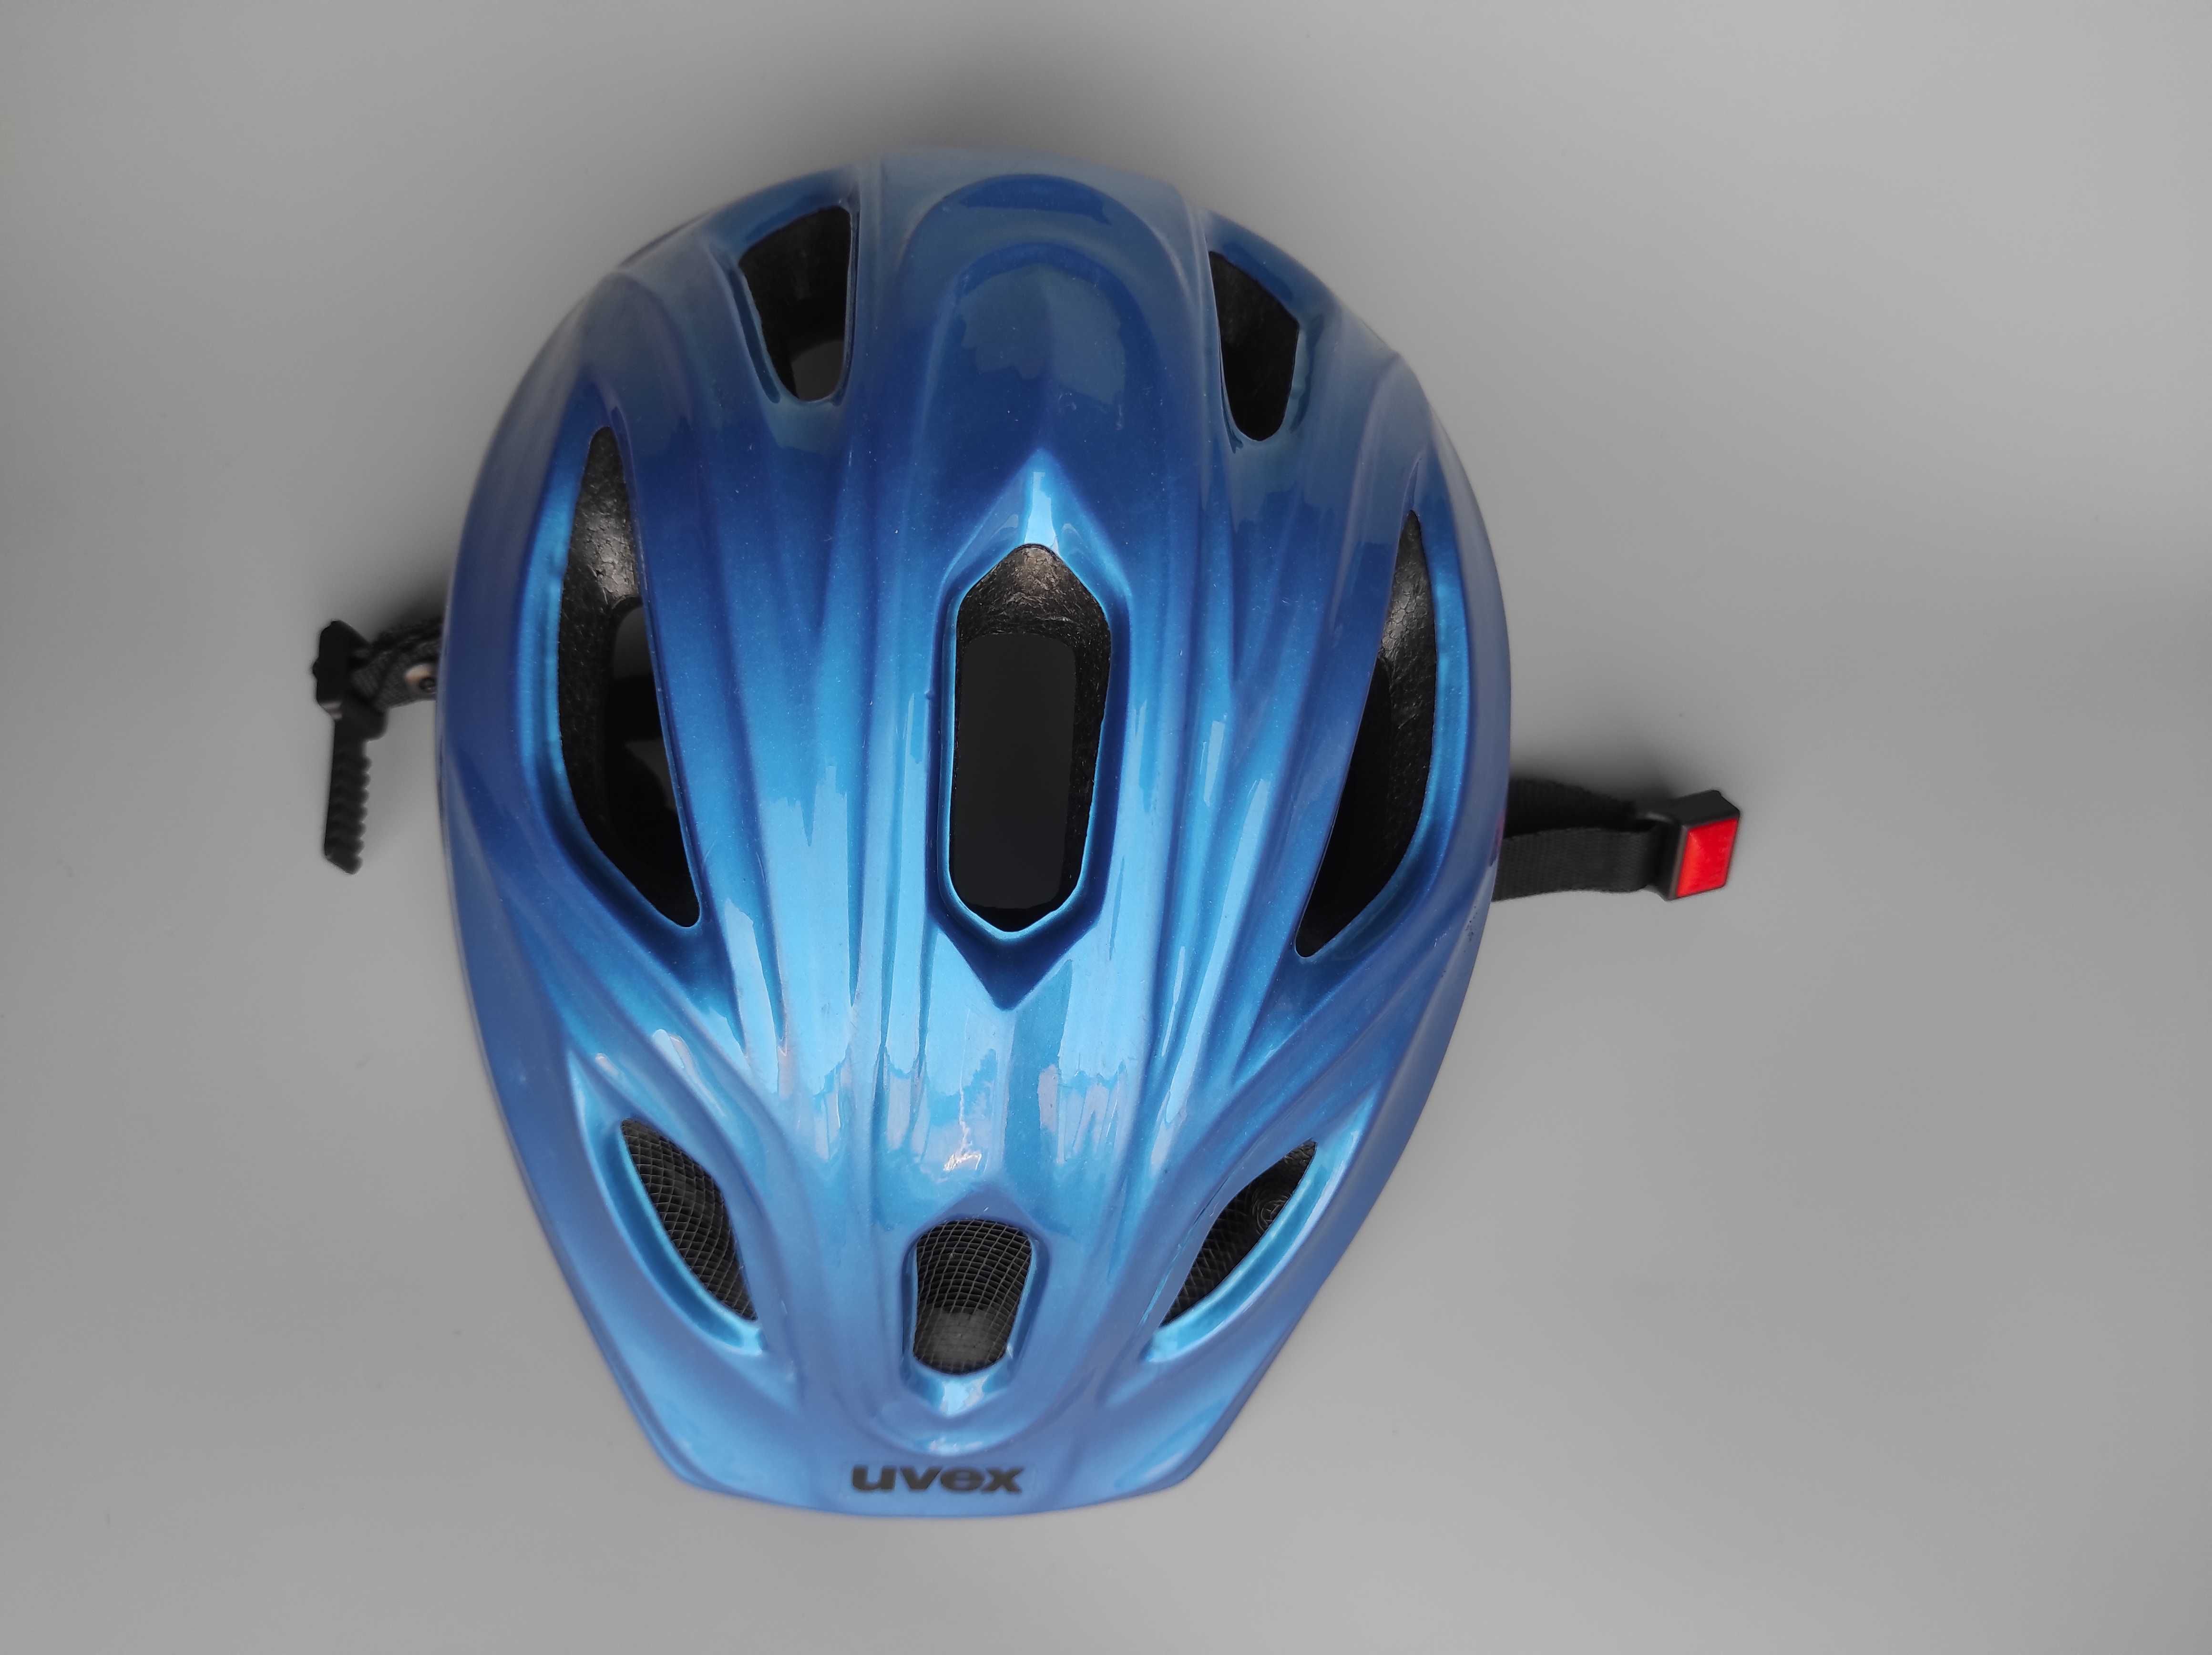 Шлем защитный Uvex Speedy, размер 53-57см, велосипедный, Германия.